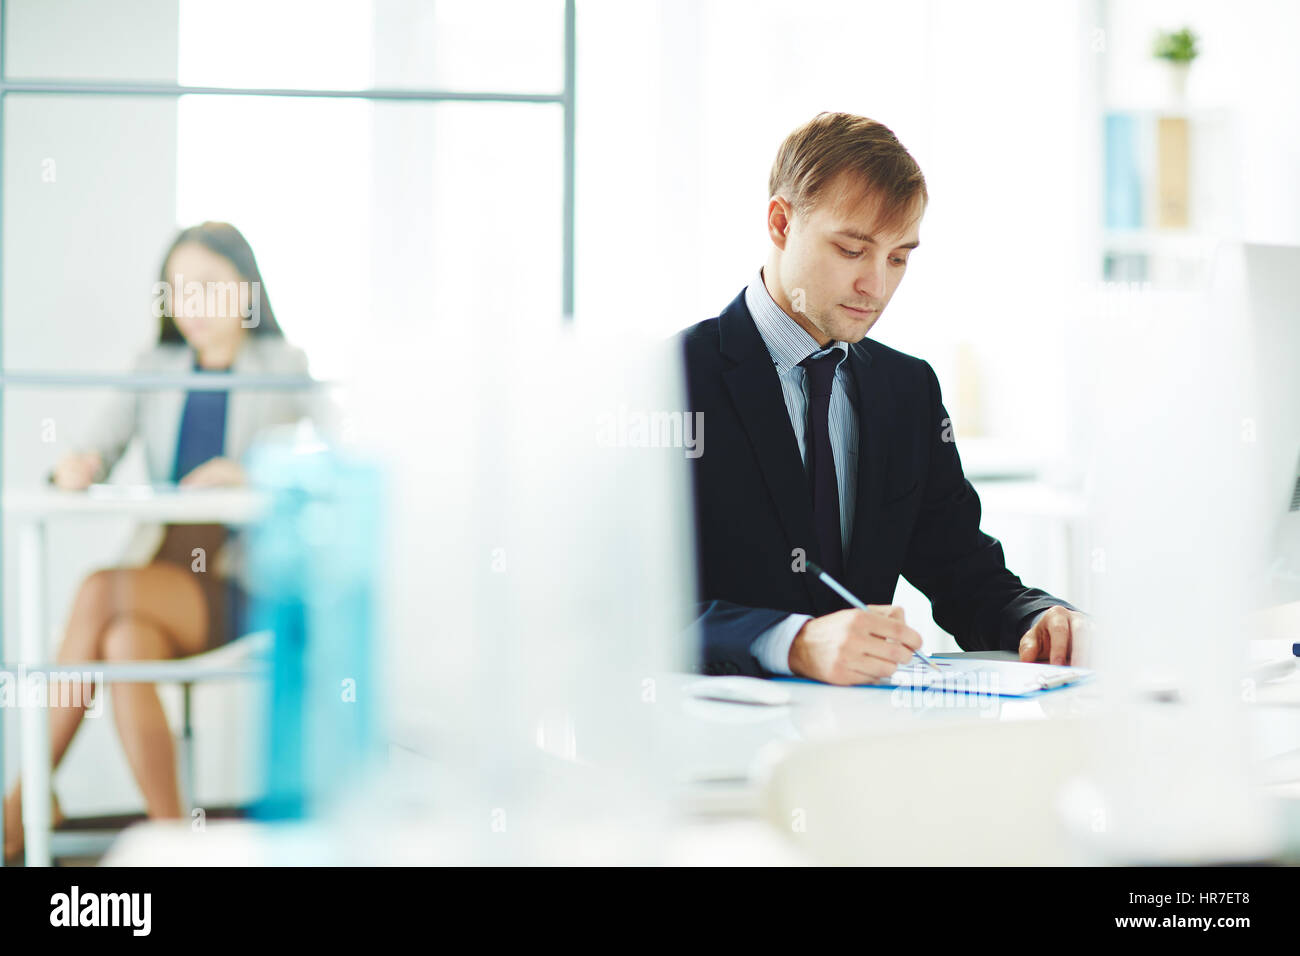 Ritratto di giovane business analyst controllo report statistiche con grafici stando seduti al posto di lavoro in un moderno ufficio di luce Foto Stock